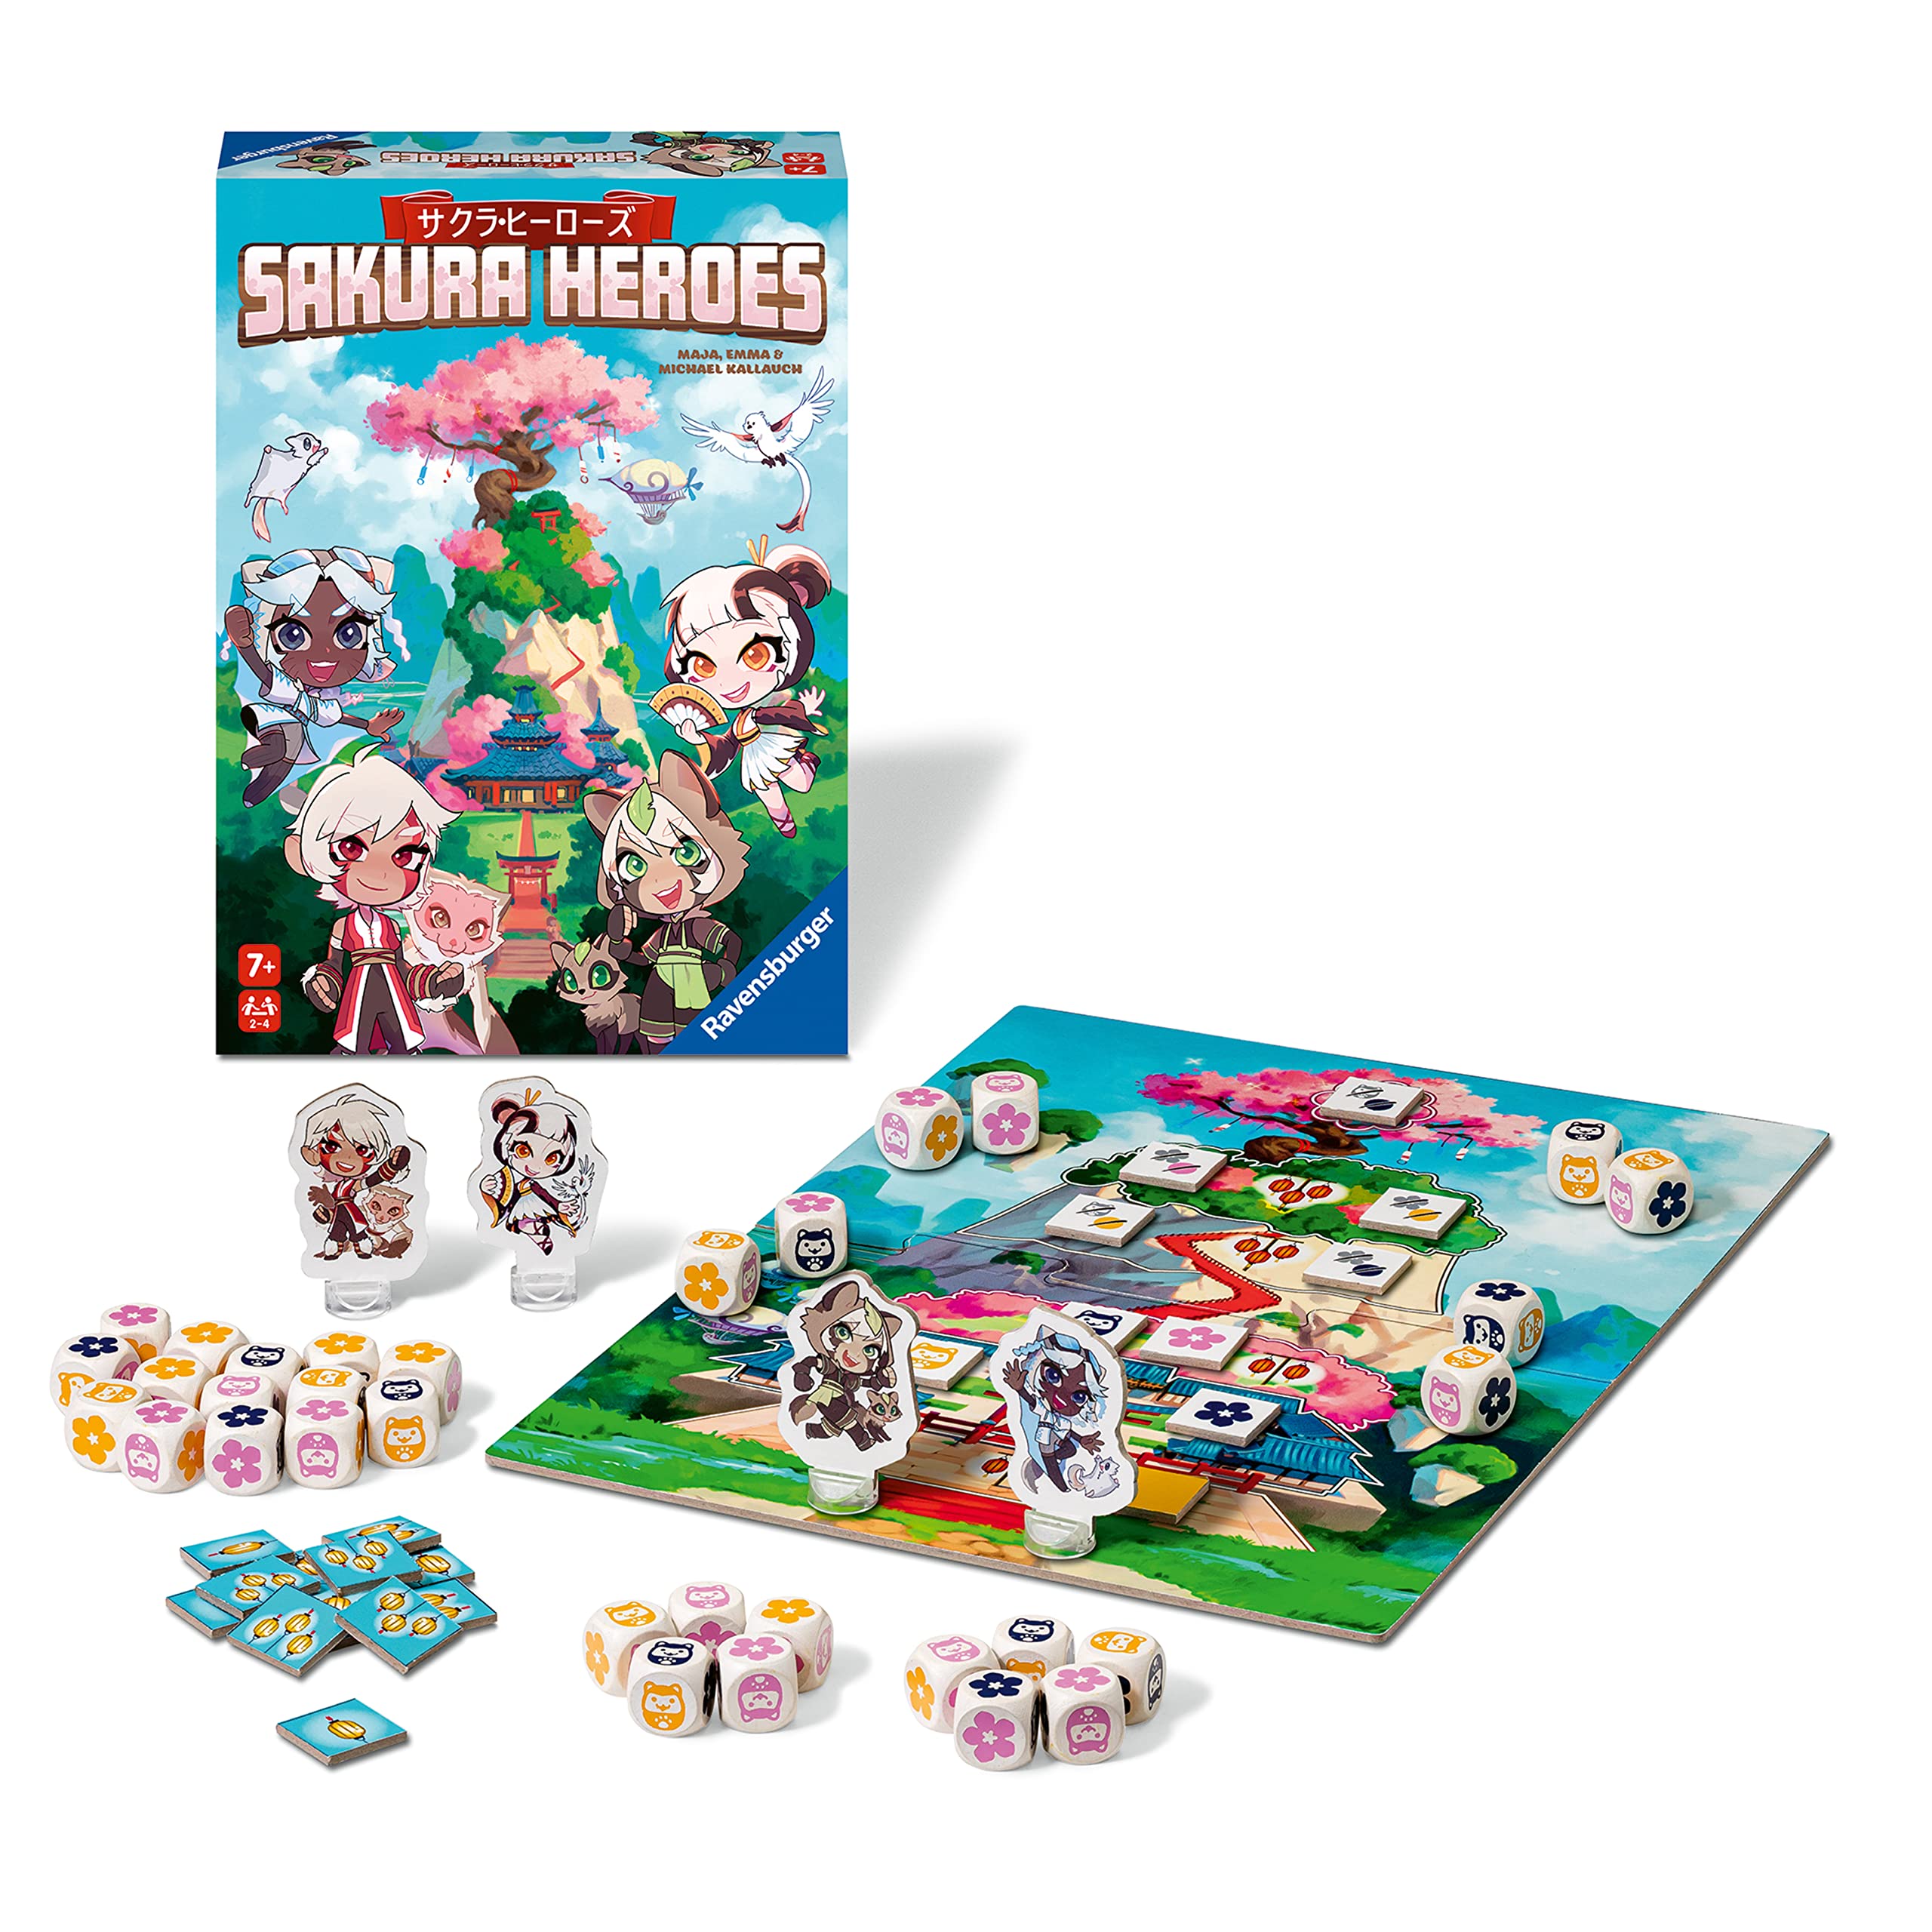 Ravensburger Sakura Heroes Dice Game $5.20 + Free Shipping w/ Prime or on $35+